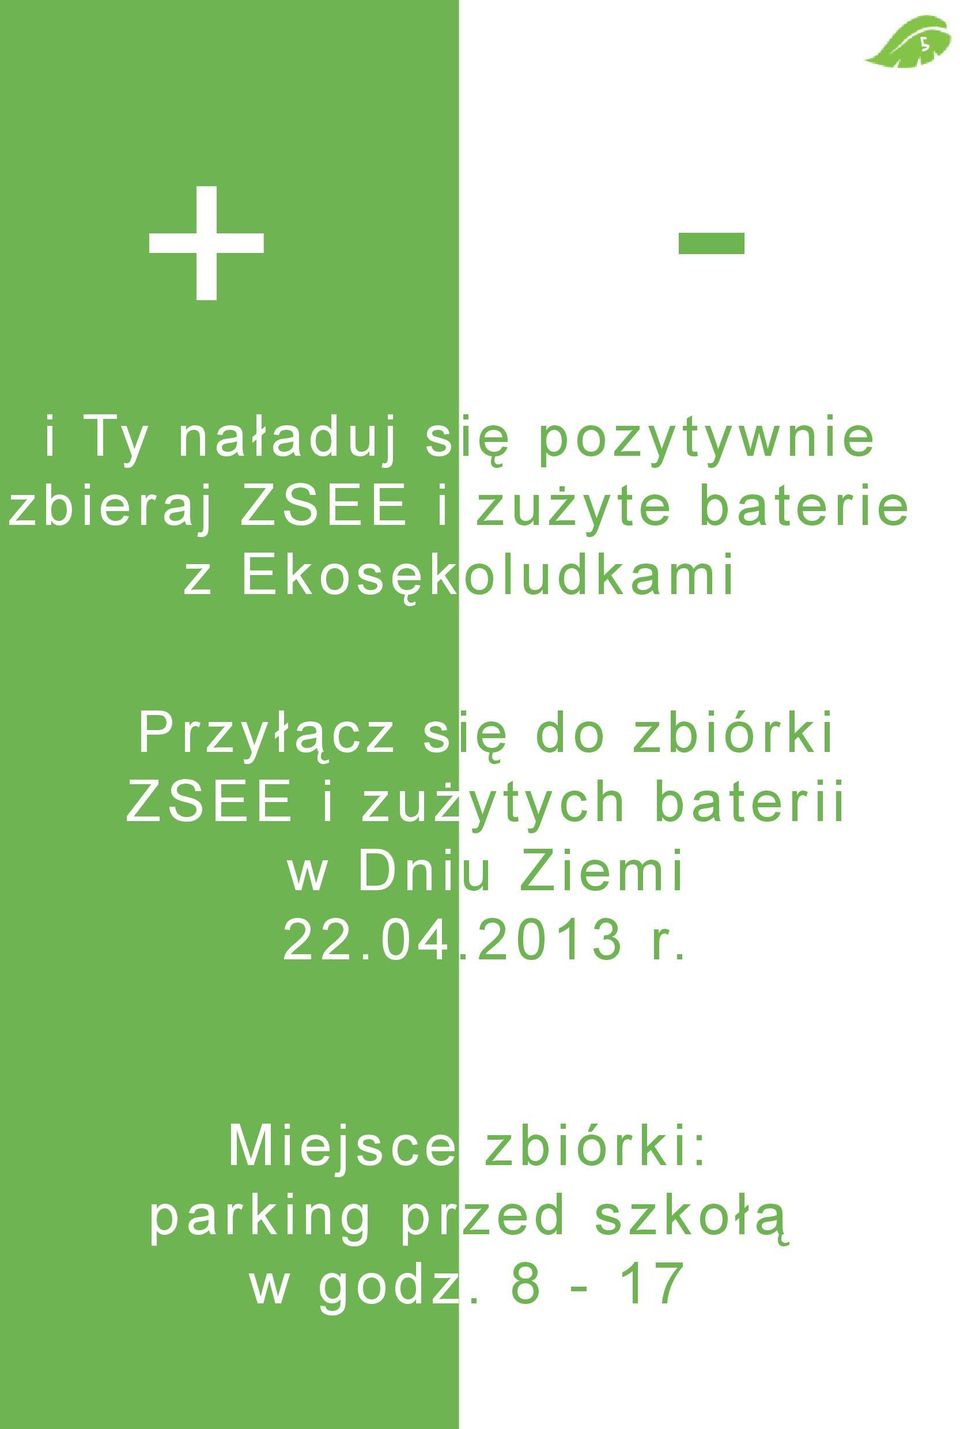 zbiórki ZSEE i zużytych baterii w Dniu Ziemi 22.04.